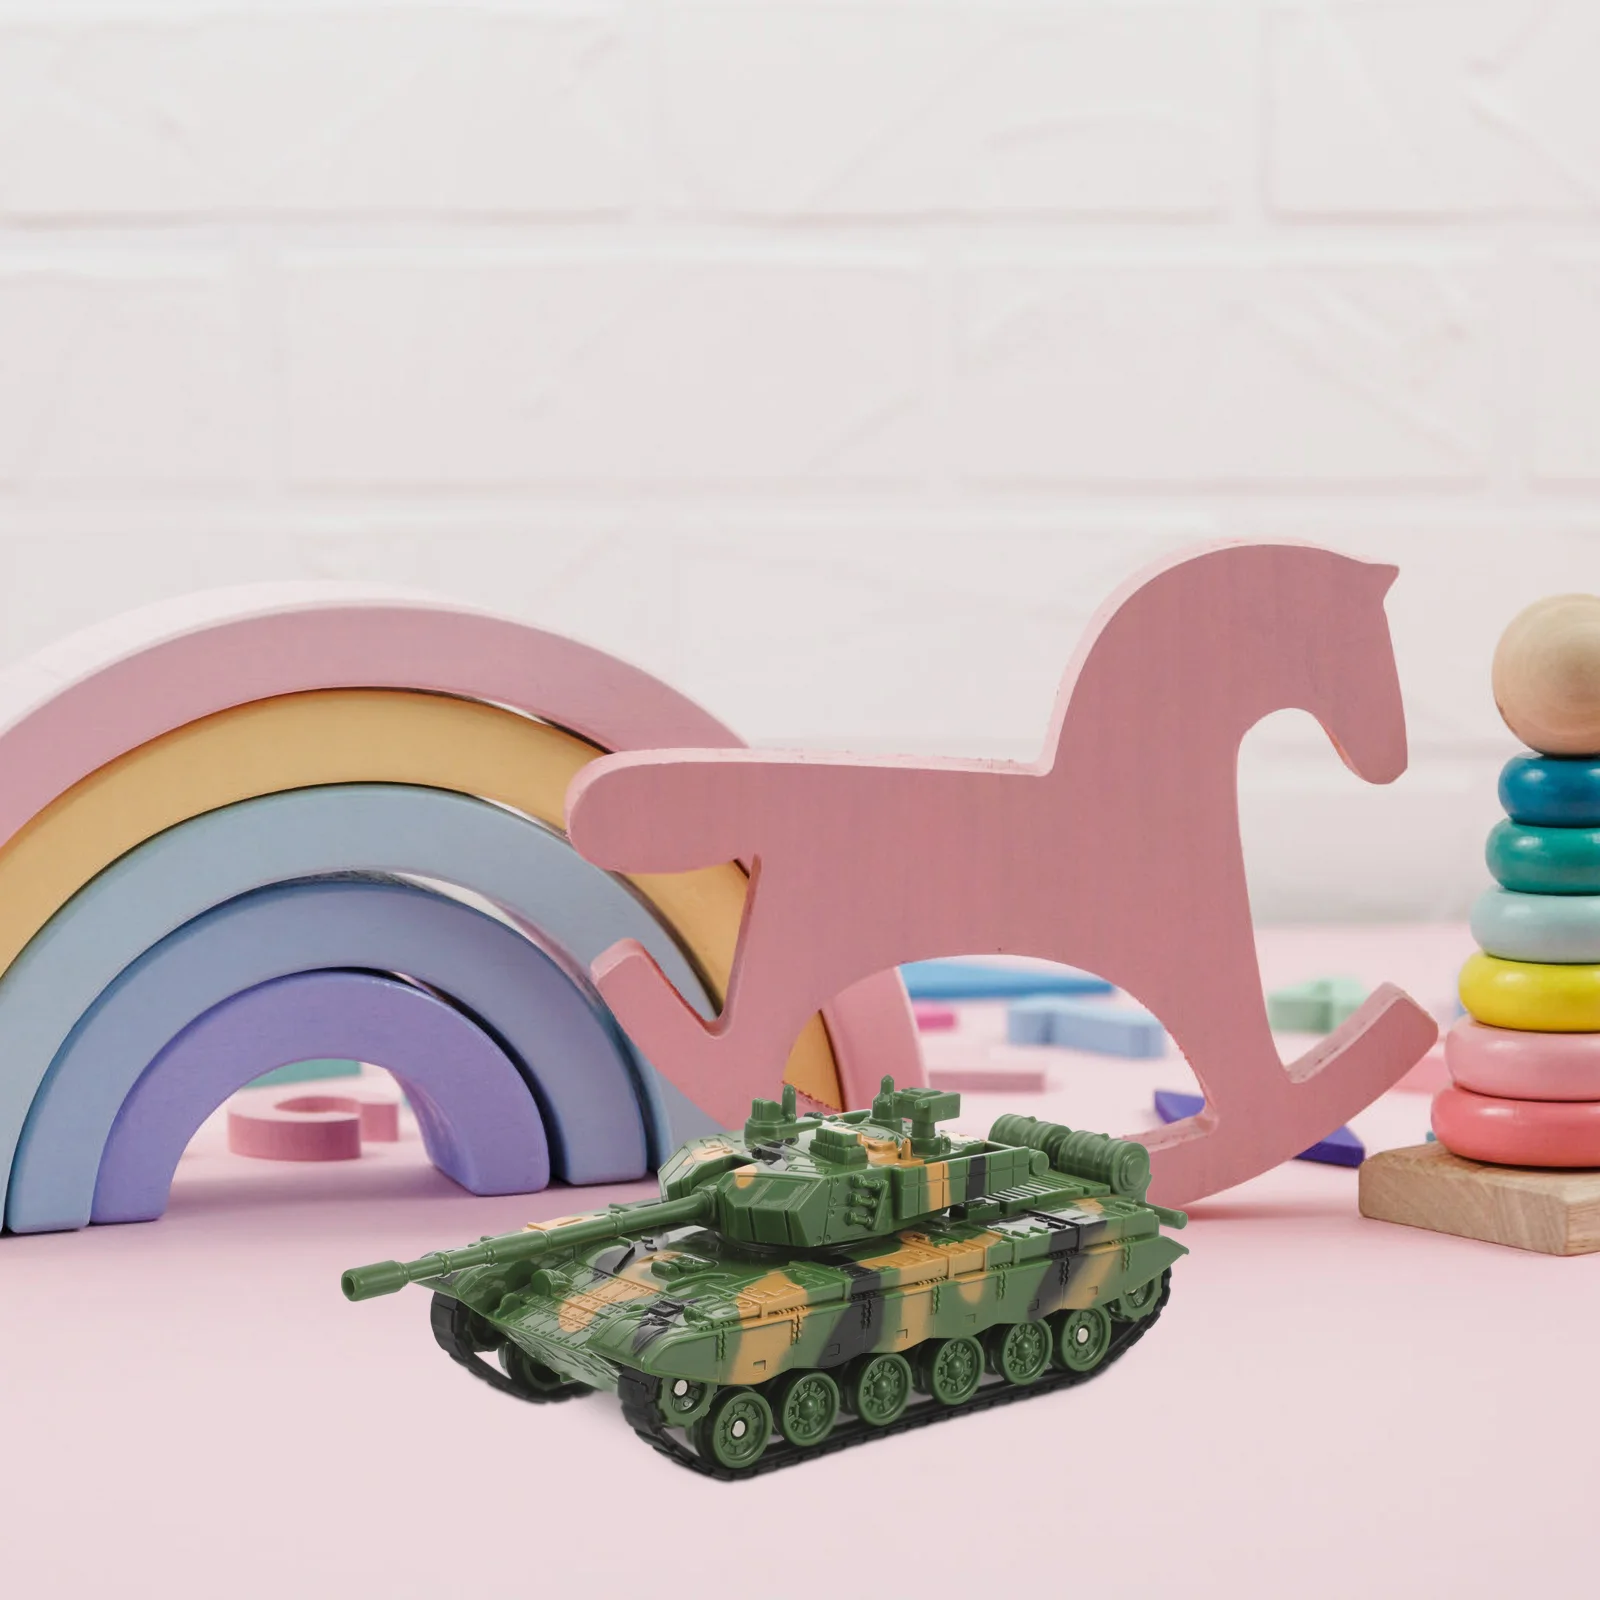 

Имитация танка игрушка детская модель танка для детей (зеленый камуфляж)